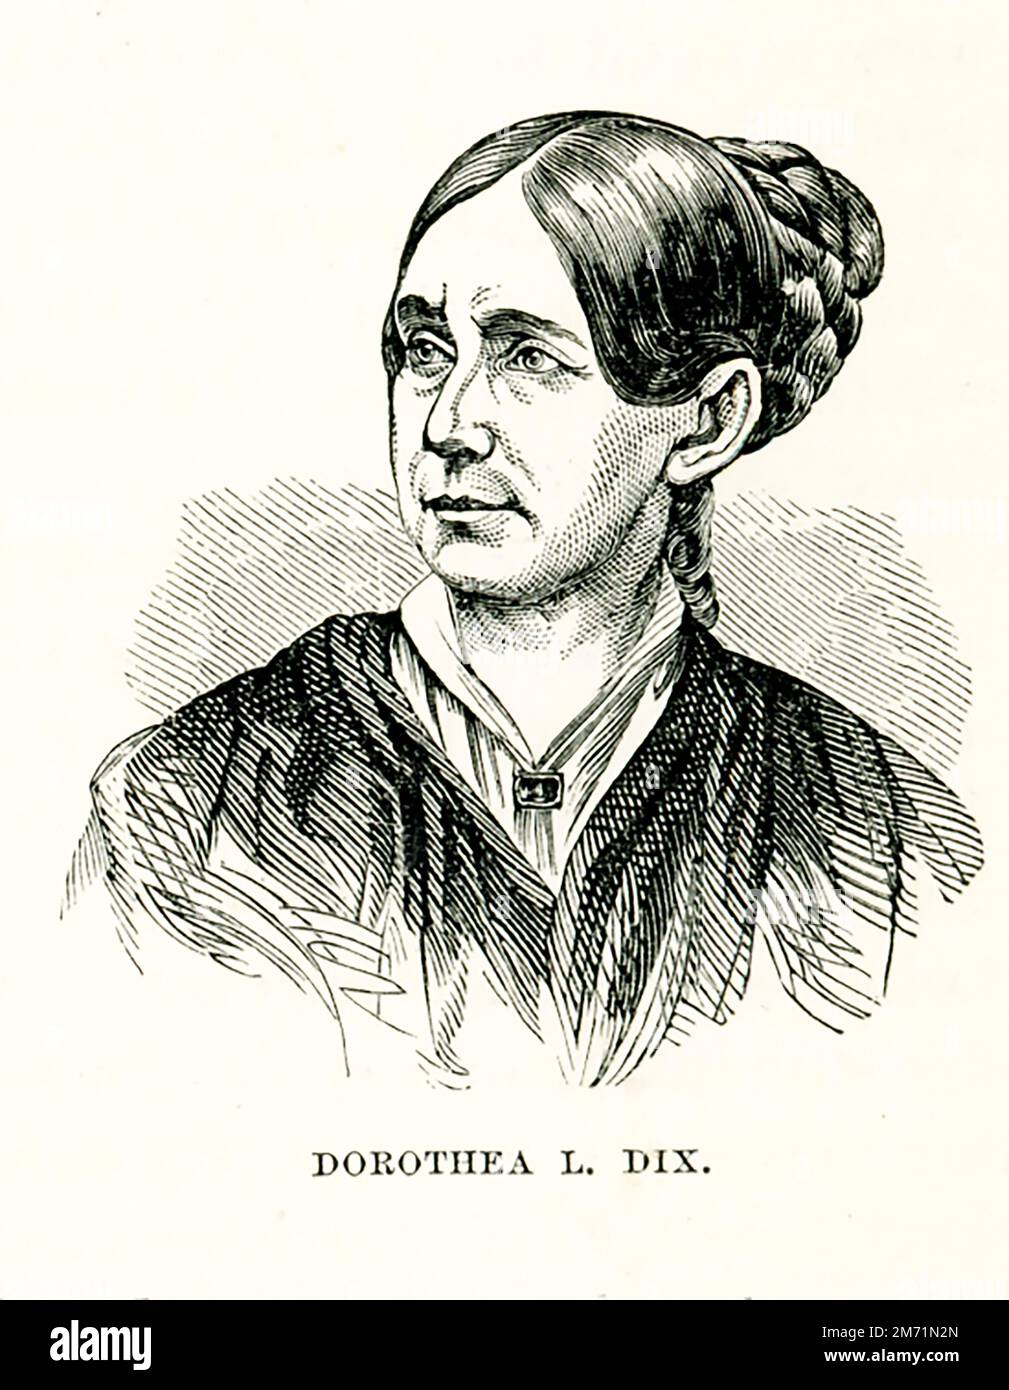 Dorothea Lynde Dix (gestorben 1887) war eine amerikanische Fürsprecherin im Namen der mittellosen Geisteskranken. Durch ein energisches und nachhaltiges Programm der Lobbyarbeit für die staatlichen Gesetzgeber und den Kongress der Vereinigten Staaten schuf sie die erste Generation amerikanischer Irrenanstalten. Während des Bürgerkriegs war sie Leiterin der Armeeschwester. Stockfoto